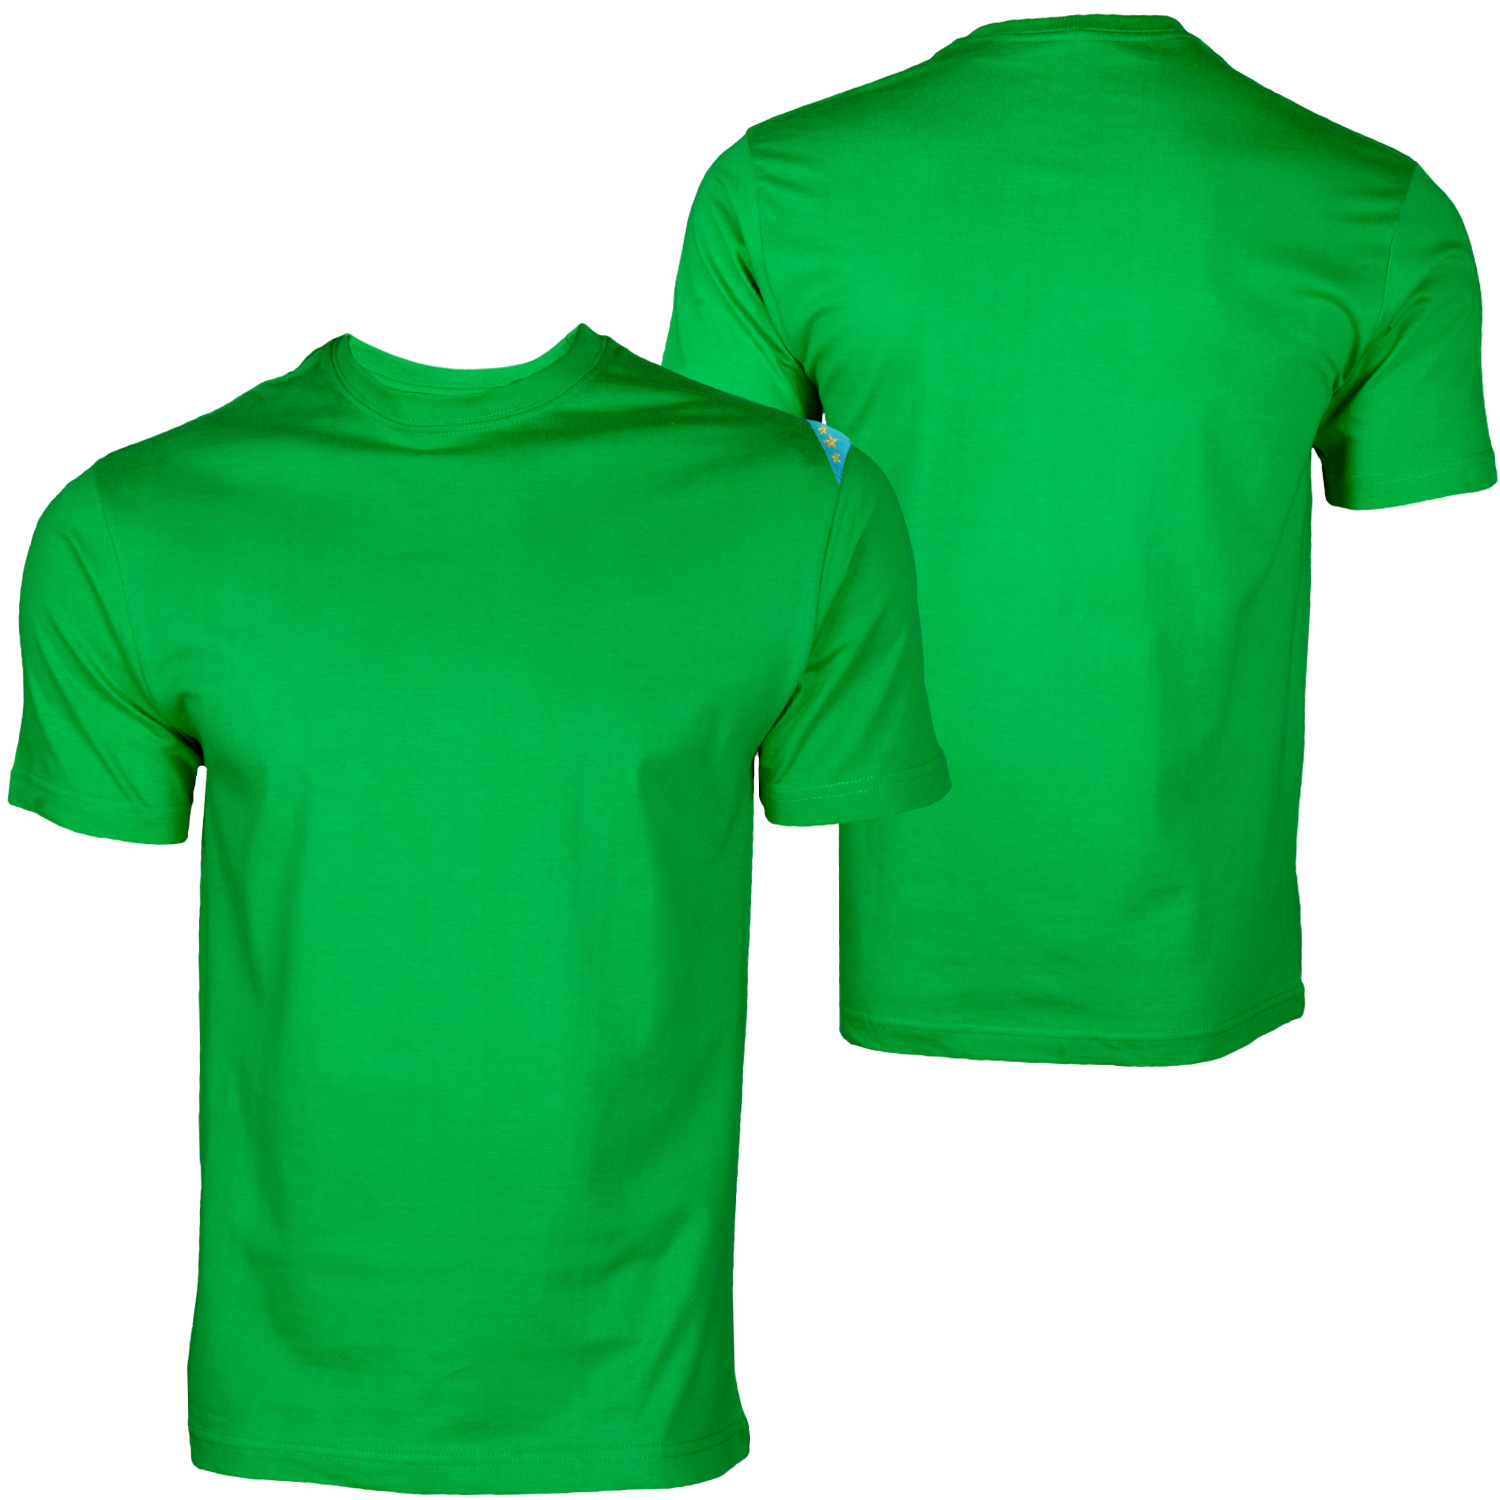 Green Shirt Template